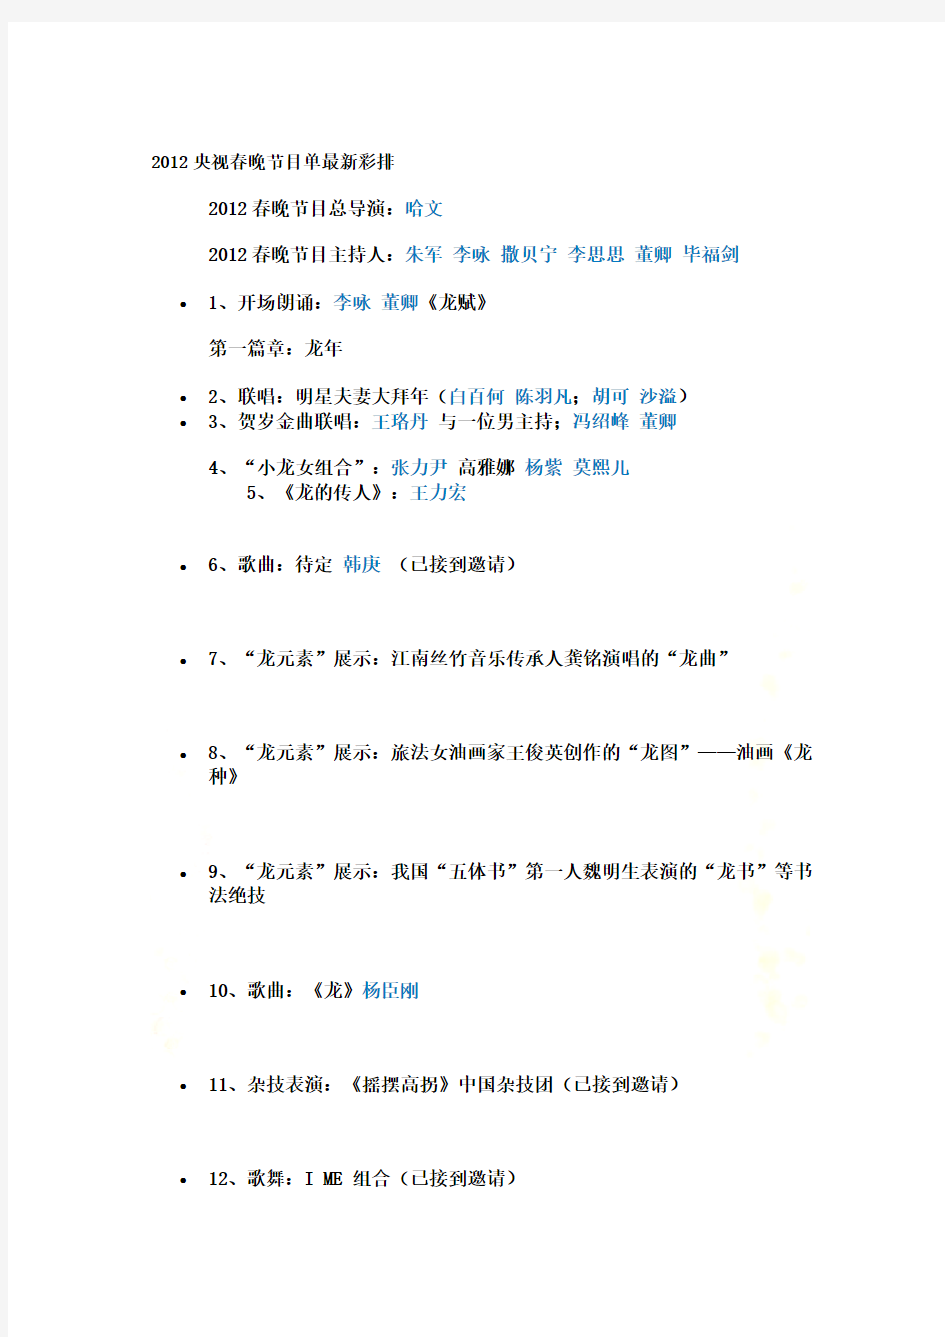 2012春节联欢晚会节目单